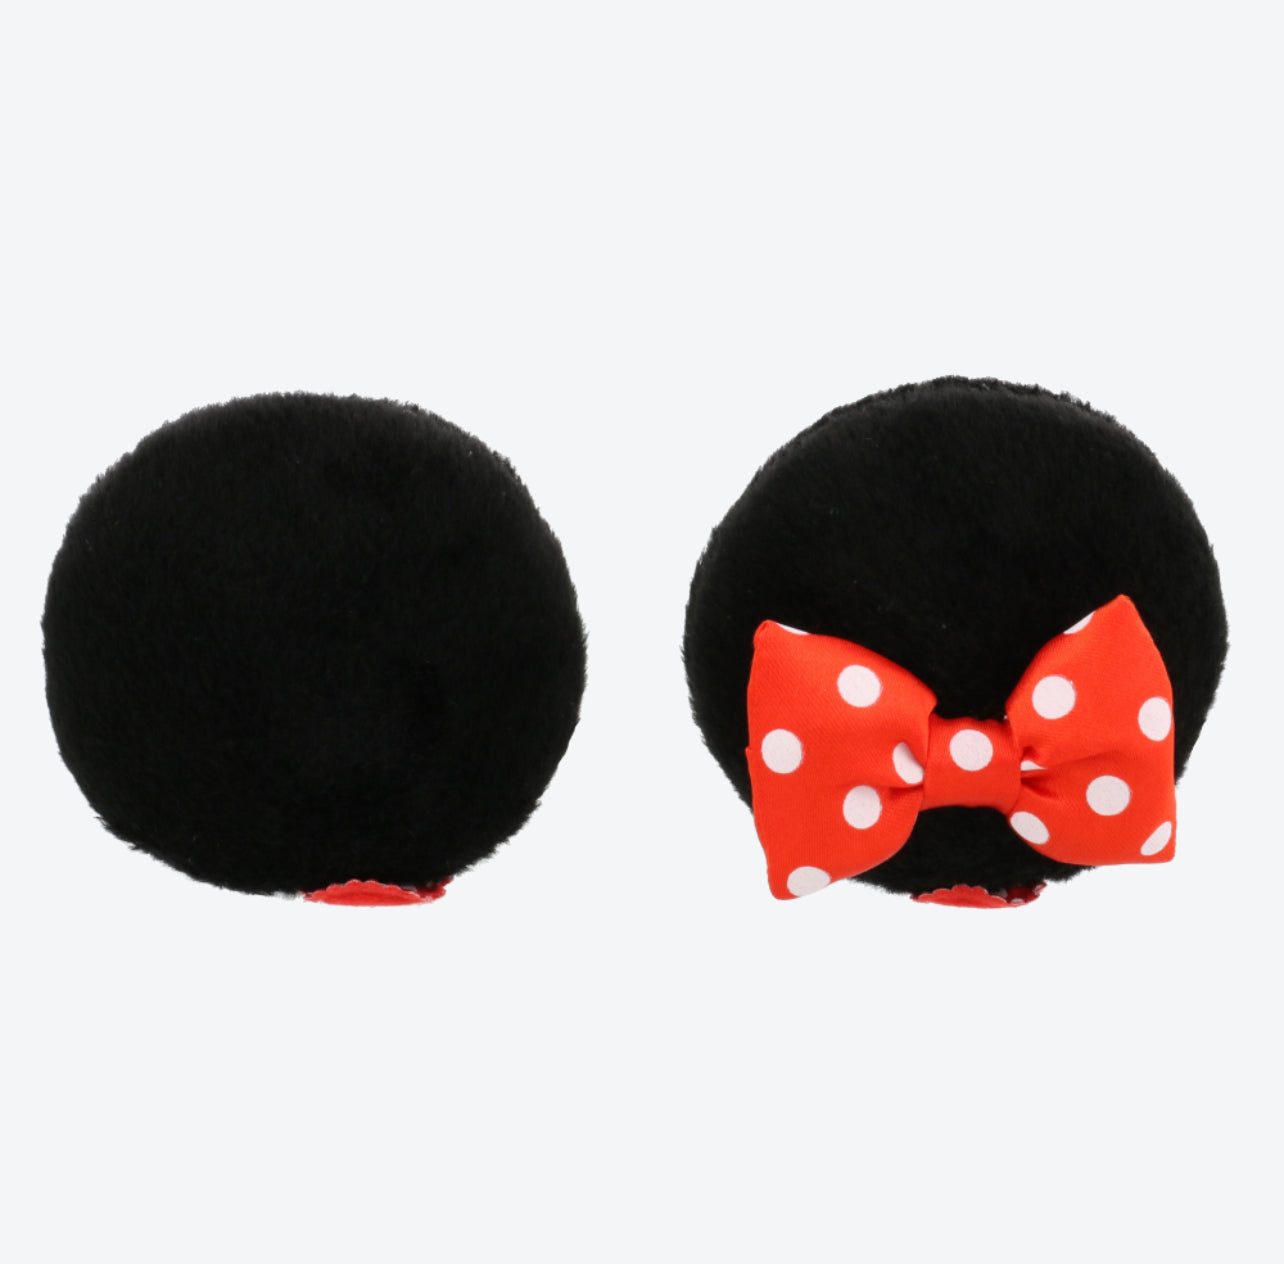 TDR - Hair Clips Ears - Minnie Mouse